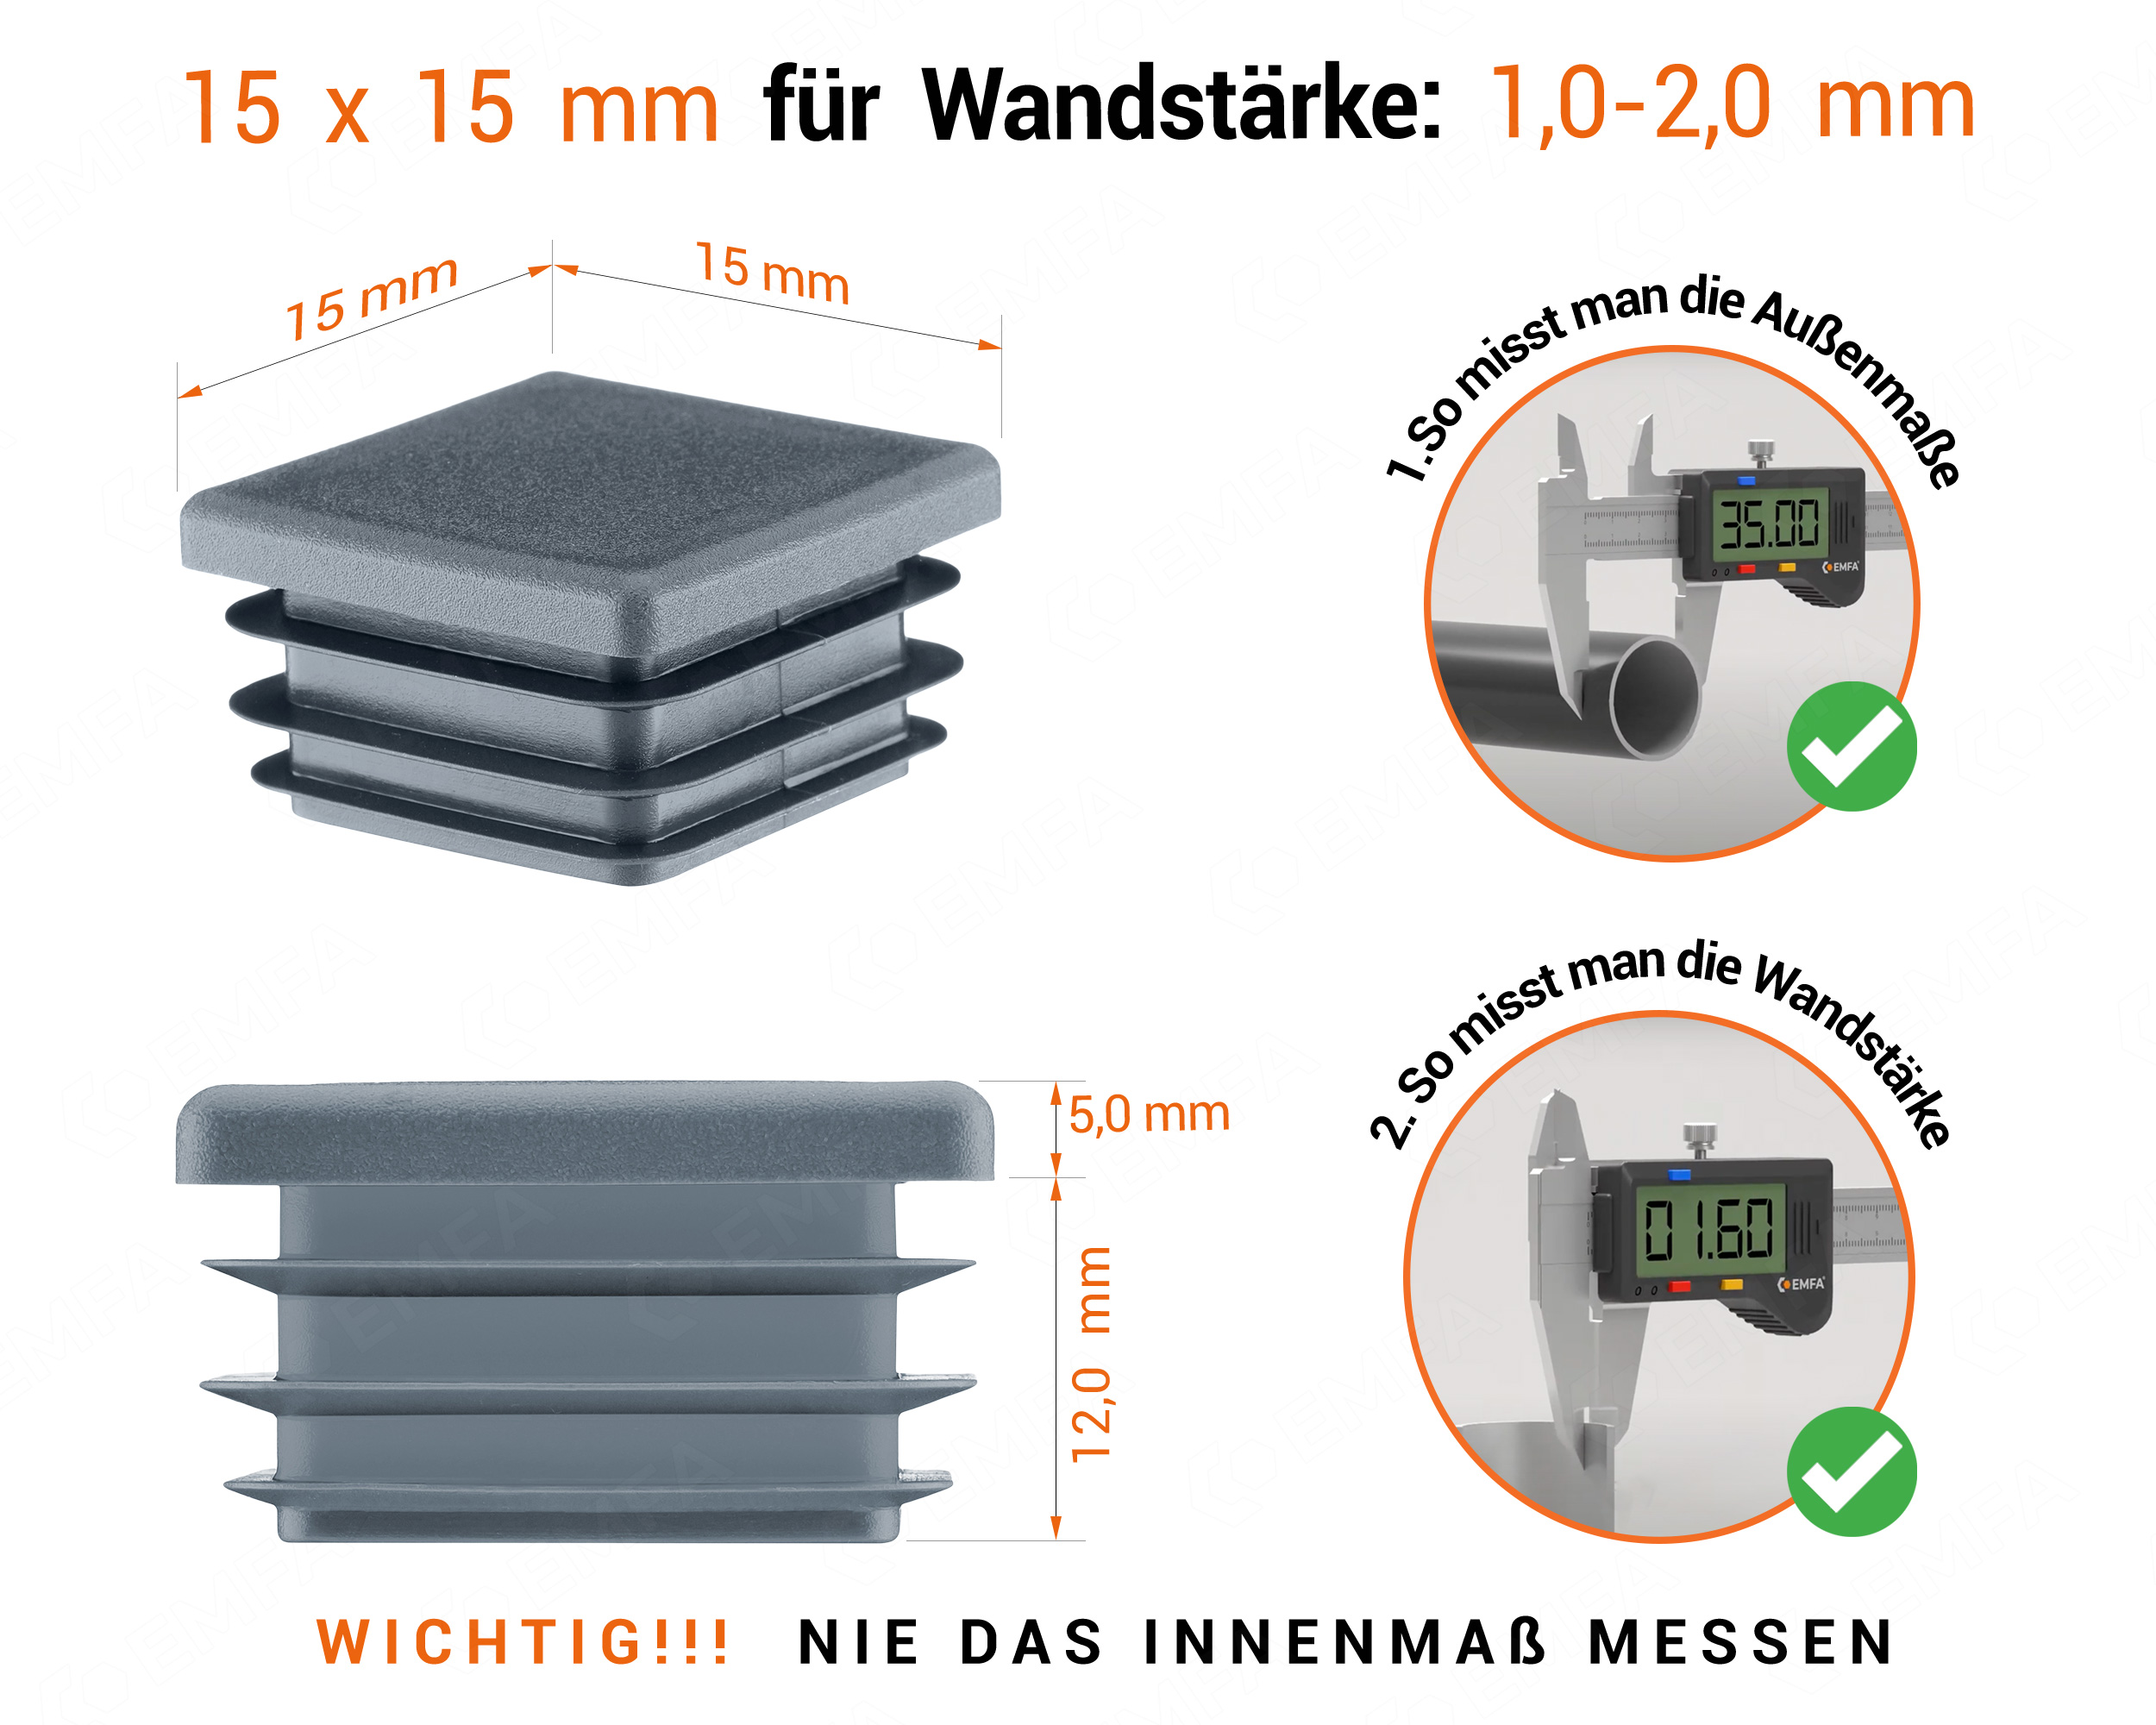 Anthrazite Endkappe für Vierkantrohre in der Größe 15x15 mm mit technischen Abmessungen und Anleitung für korrekte Messung